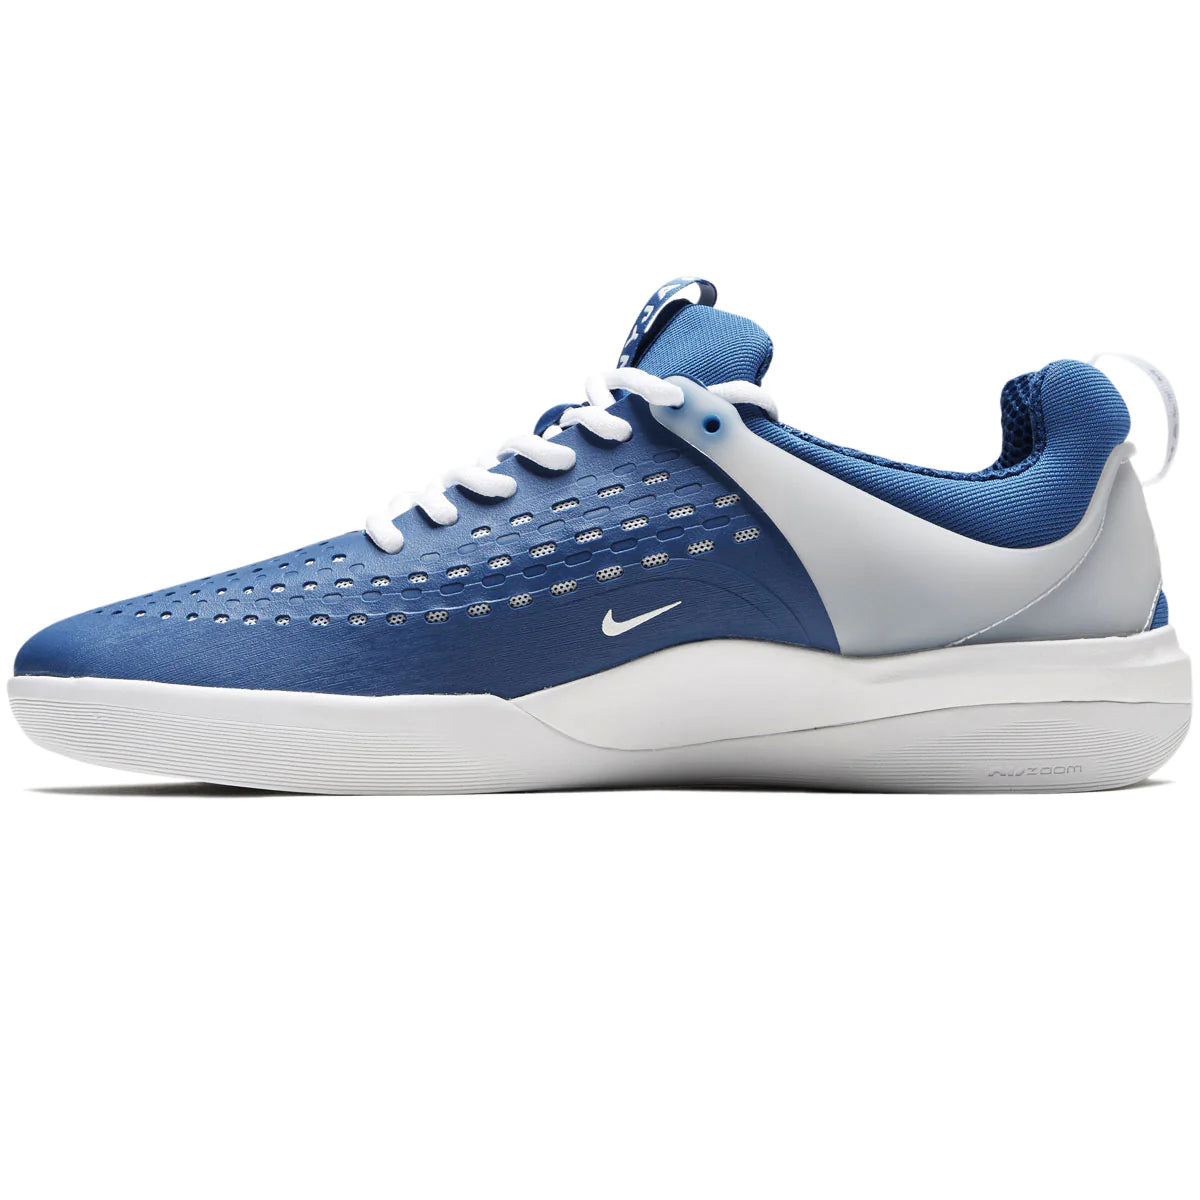 Nike SB Nyjah 3 Game Royal Blue/White